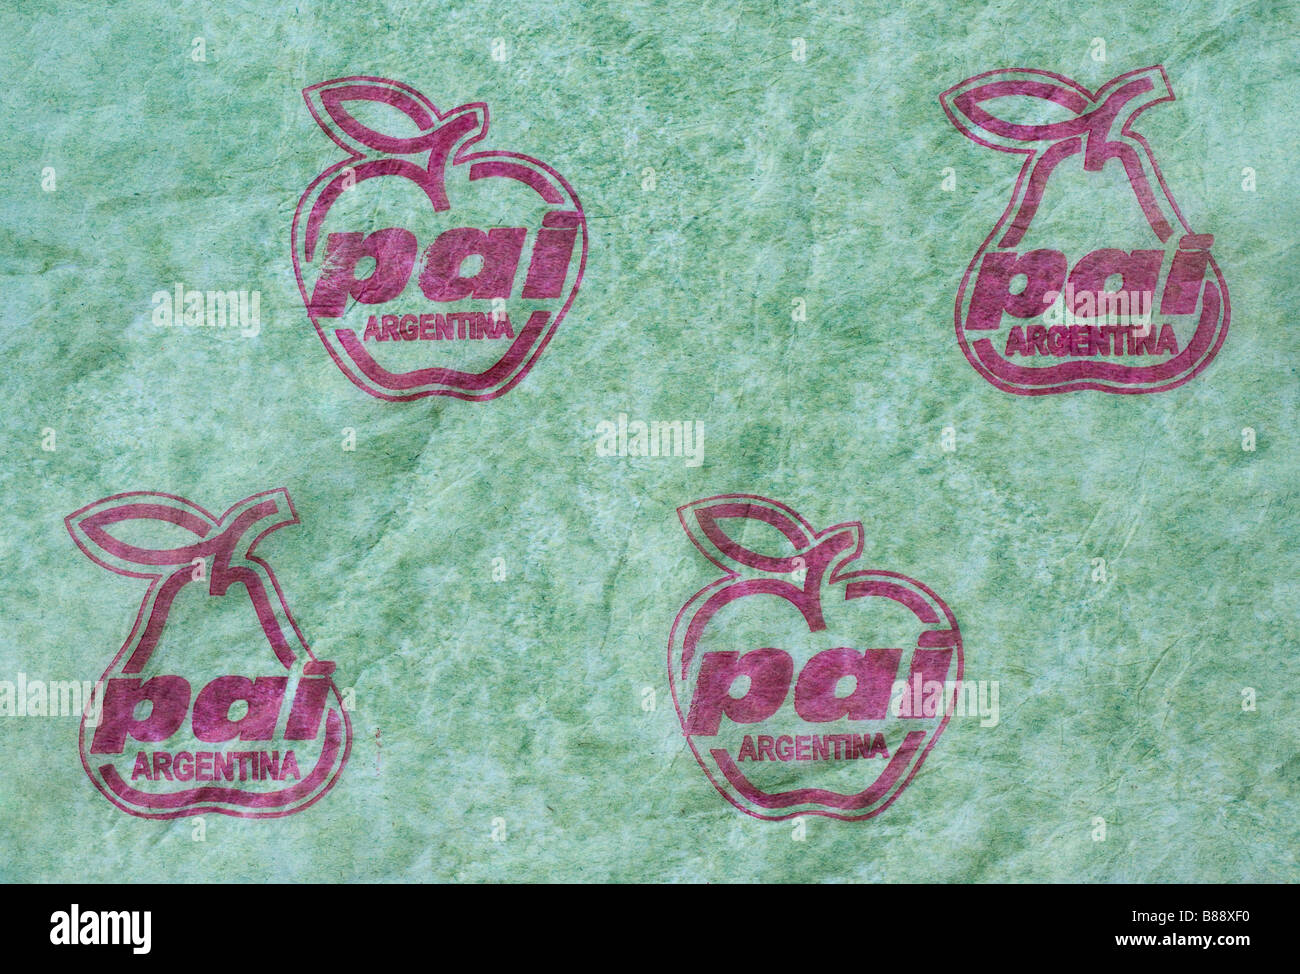 Fruit wrapper à partir de l'Argentine - illustration logo sur du papier de soie vert. Banque D'Images